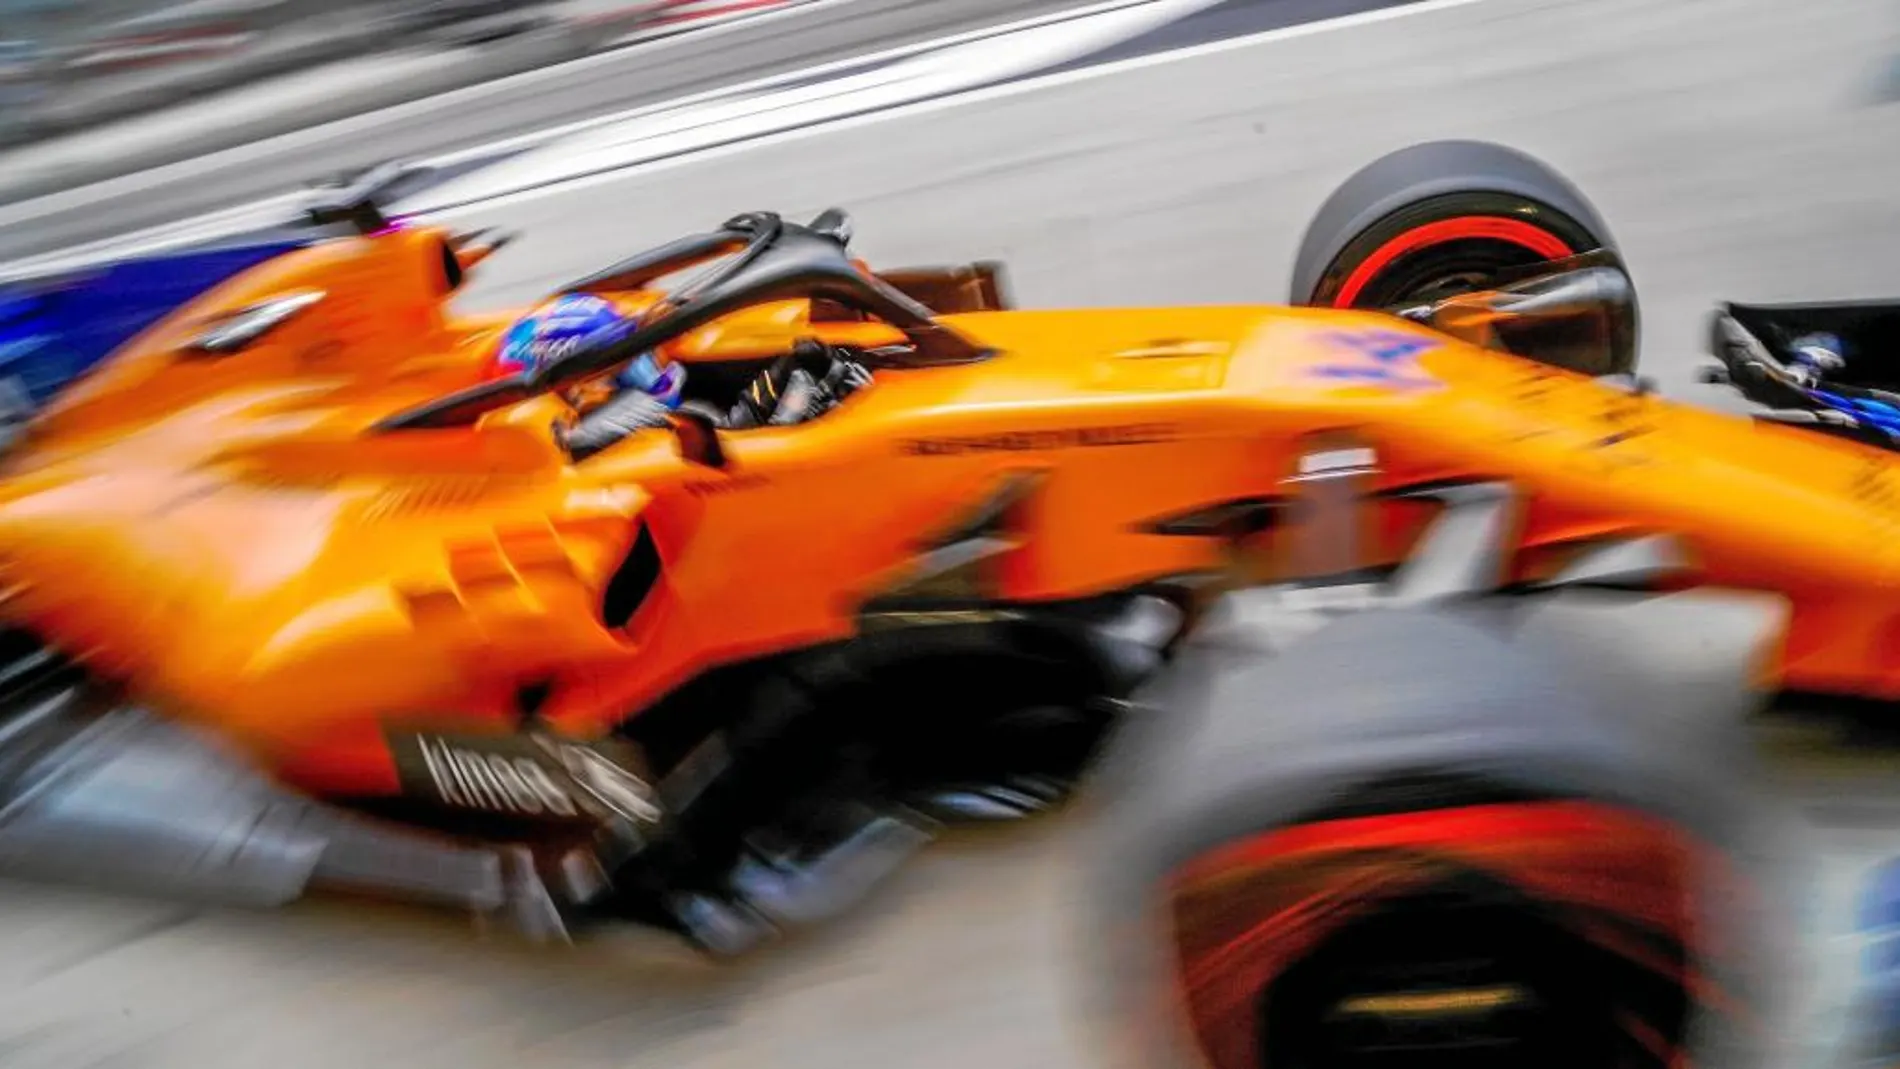 Alonso terminó noveno en los entrenamientos libres del Gran Premio de Bahréin. El finlandés Kimi Raikkonen (Ferrari) fue el más rápido en las primeras sesiones